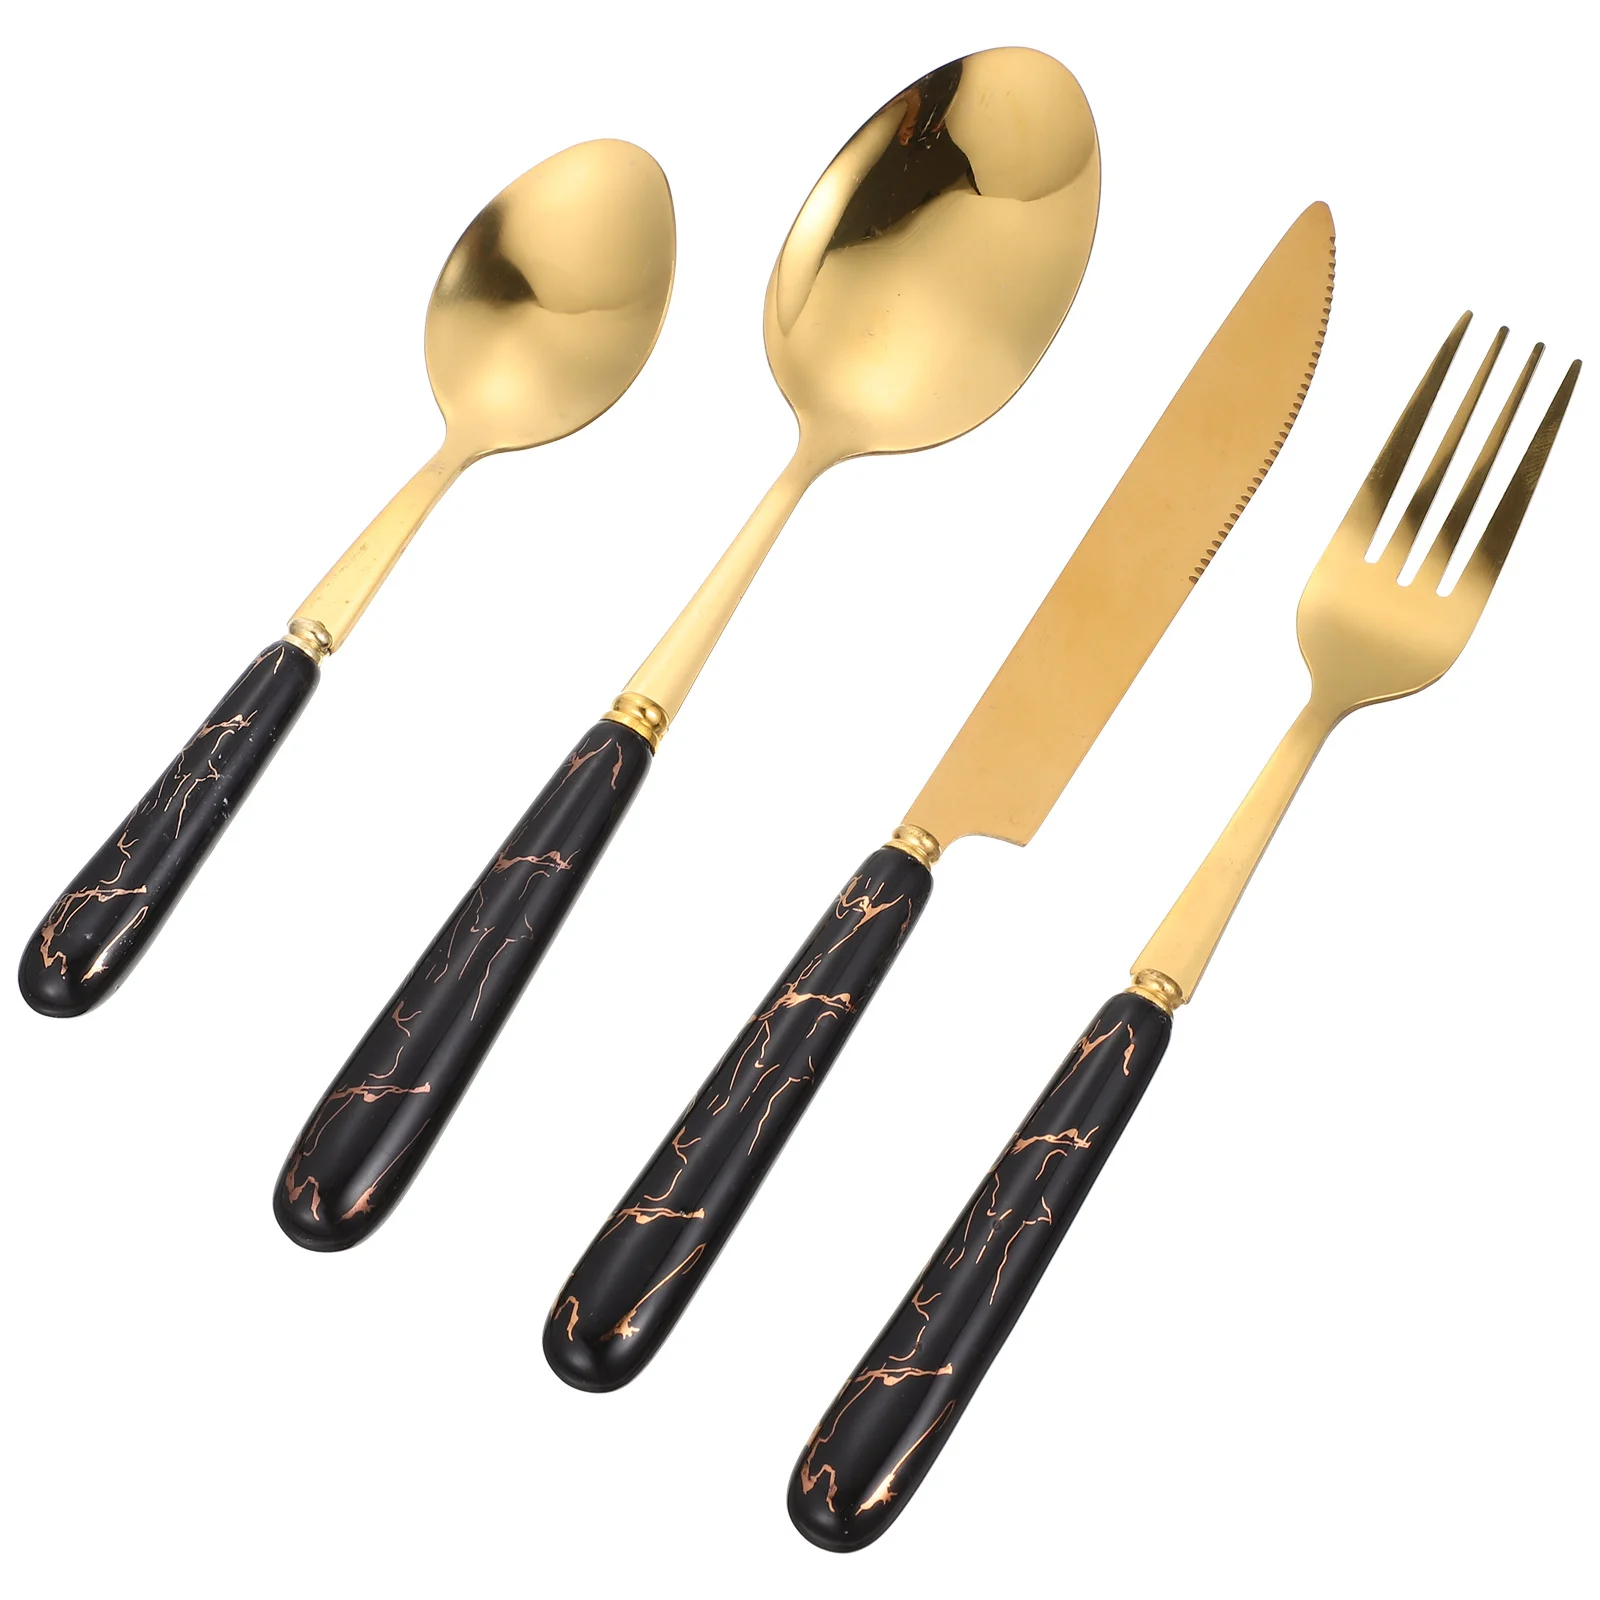 

Set Cutlery Stainless Steak Spoons Steel Dinner Fork Silverware Tableware Utensils Flatware Spoon Serving Gold Eating Kitchen